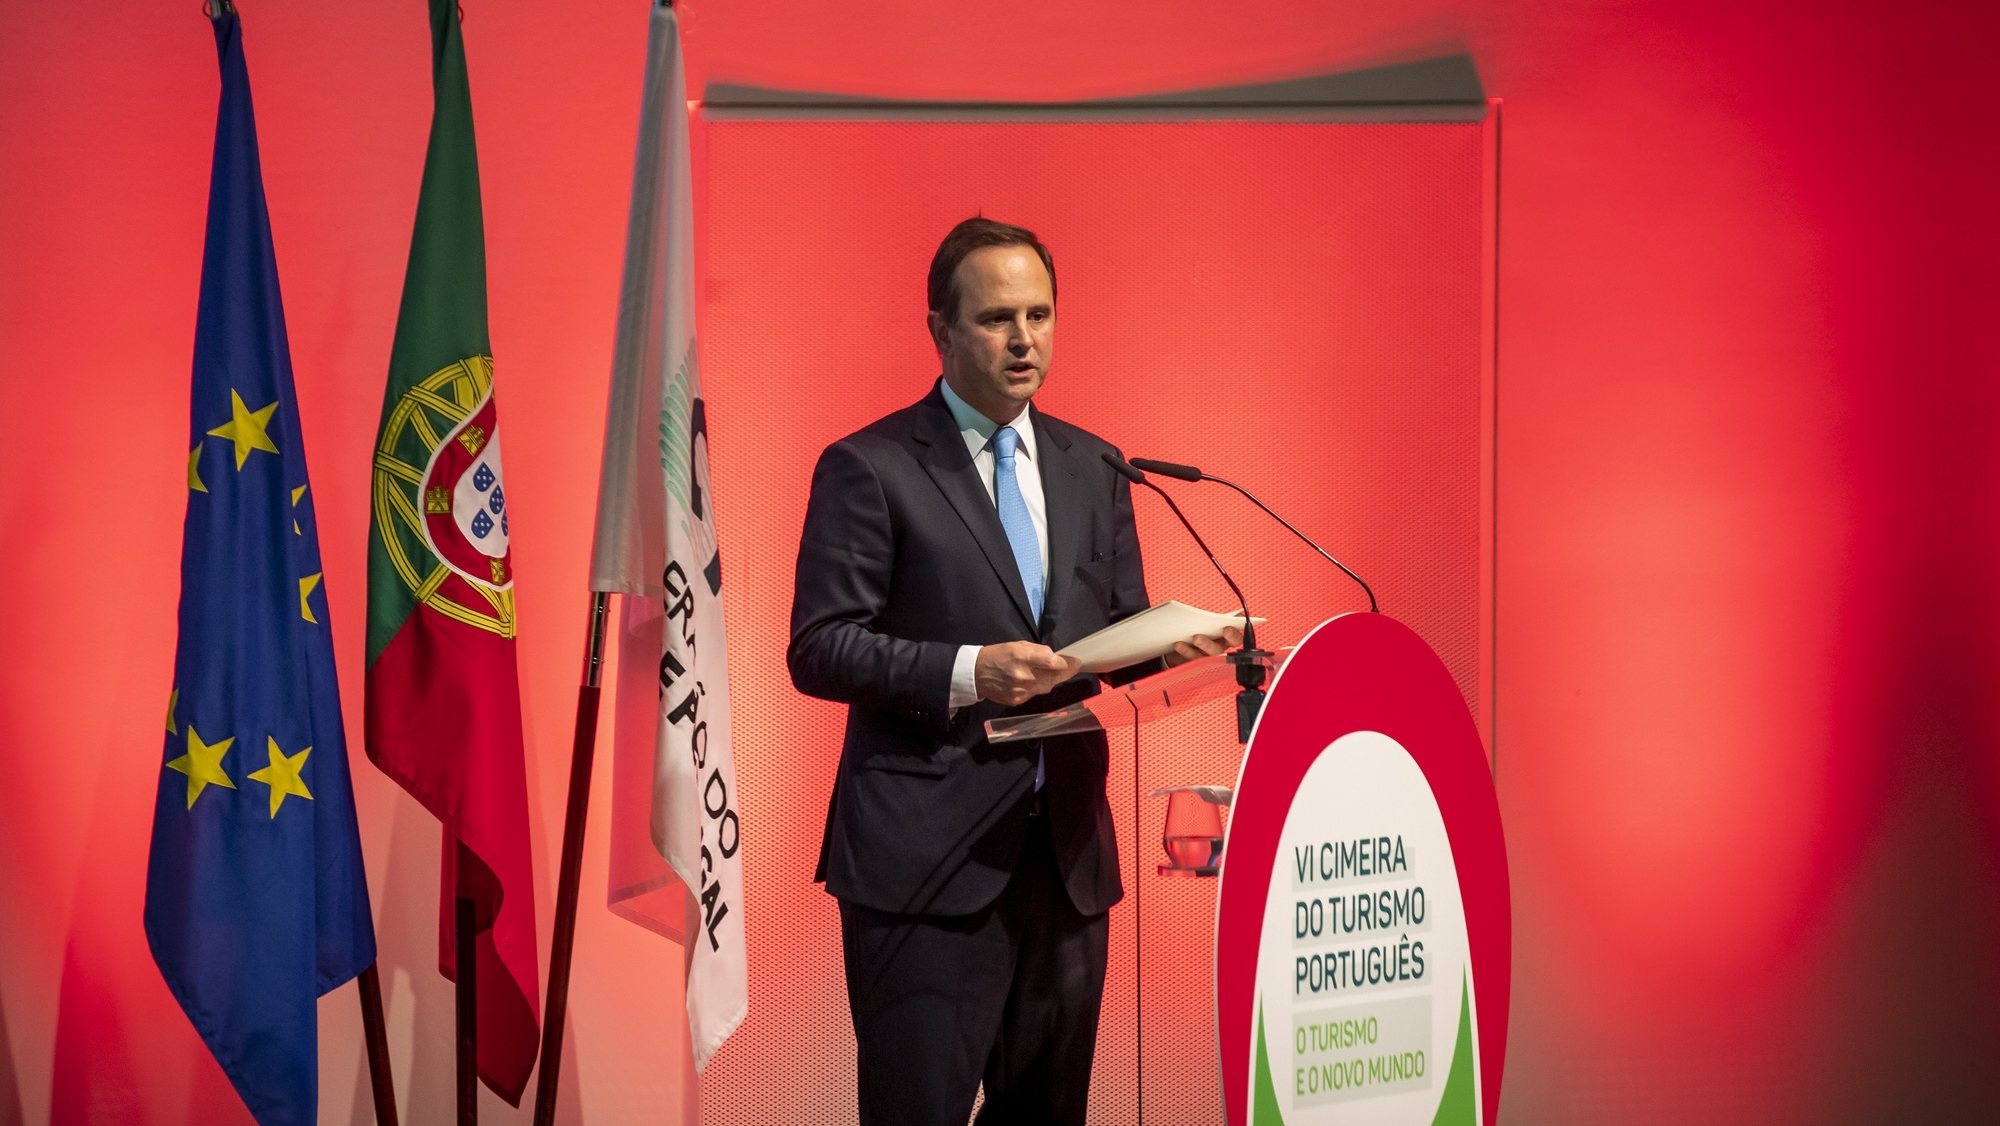 O ministro das Finanças, Fernando Medina, usa da palavra durante a VI Cimeira do Turismo Português, no auditório da Fundação Champalimaud, em Lisboa, 27 de setembro 2022. JOSÉ SENA GOULÃO/LUSA